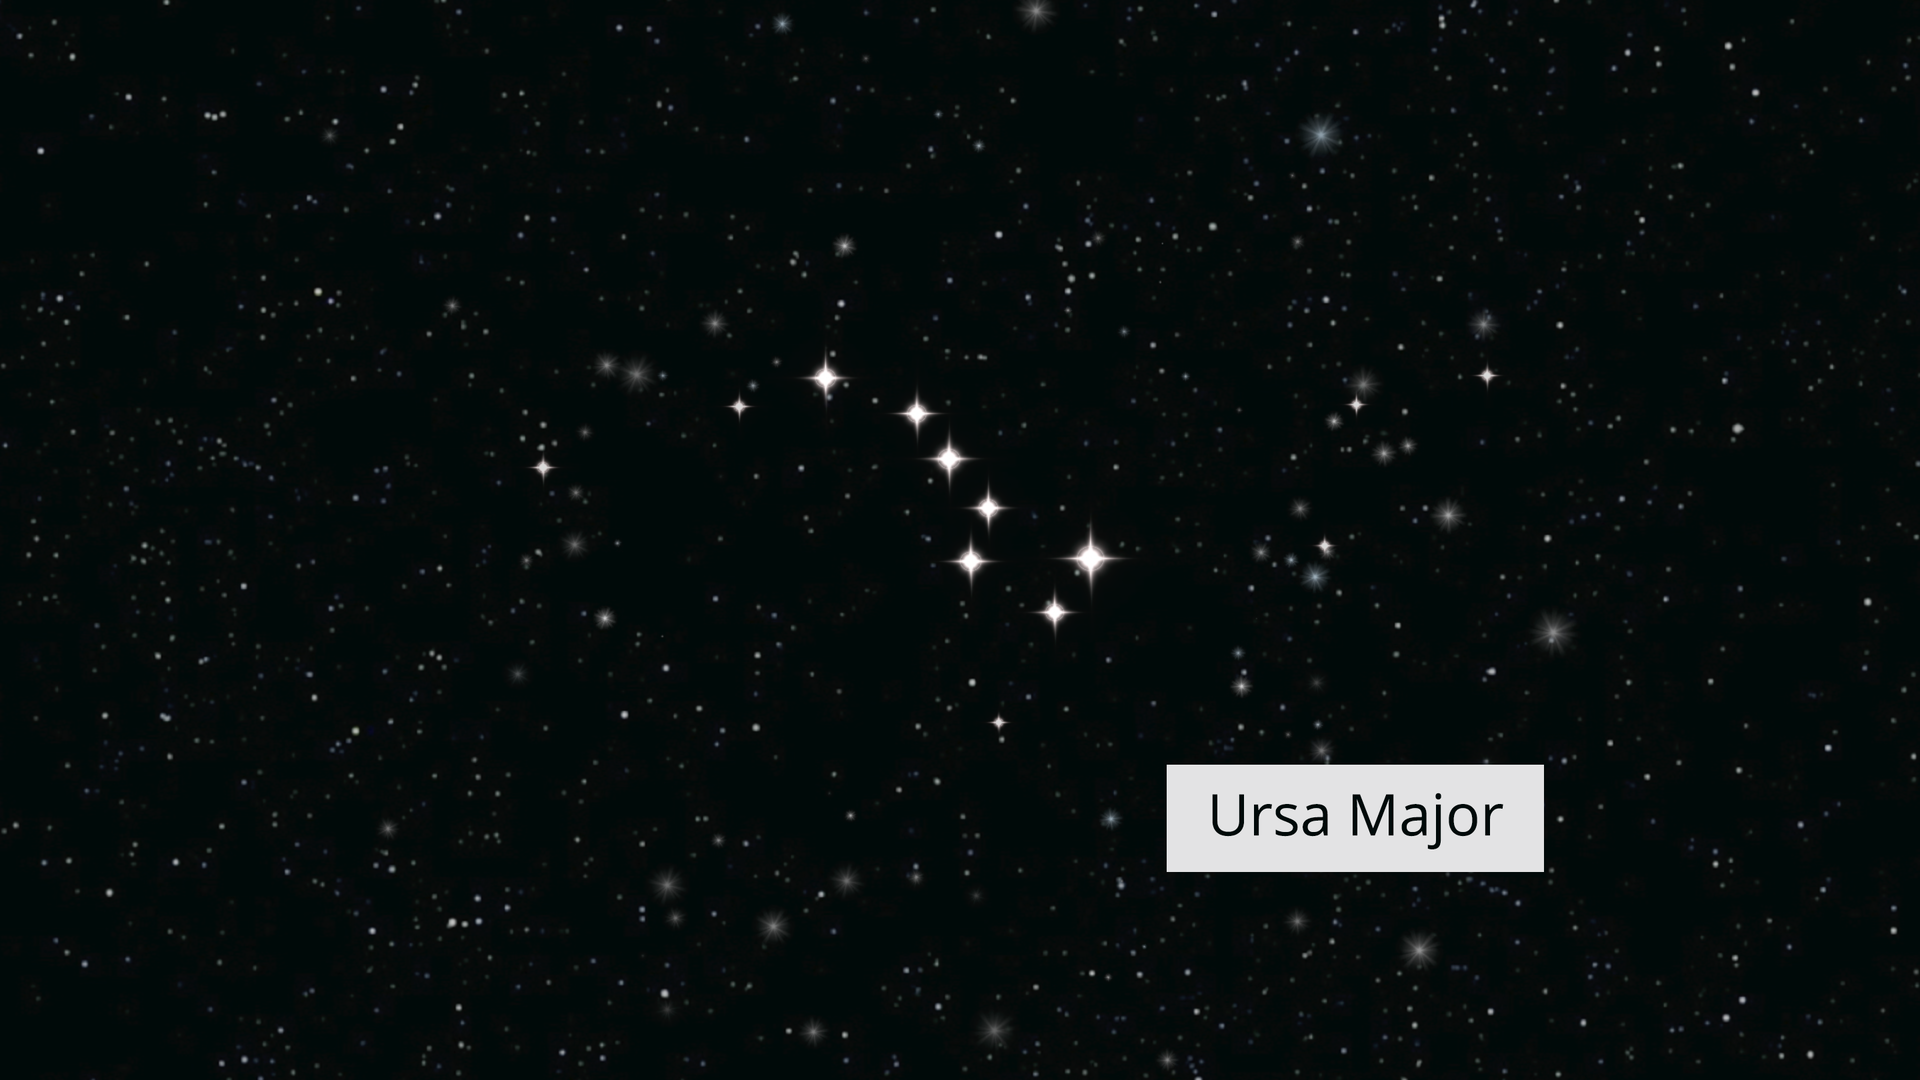 Rysunek przedstawia nocne niebo, na którym w postaci punktów są zaznaczone gwiazdy tworzące gwiazdozbiór. Wielki wóz został podpisany w języku angielskim Ursa Major.